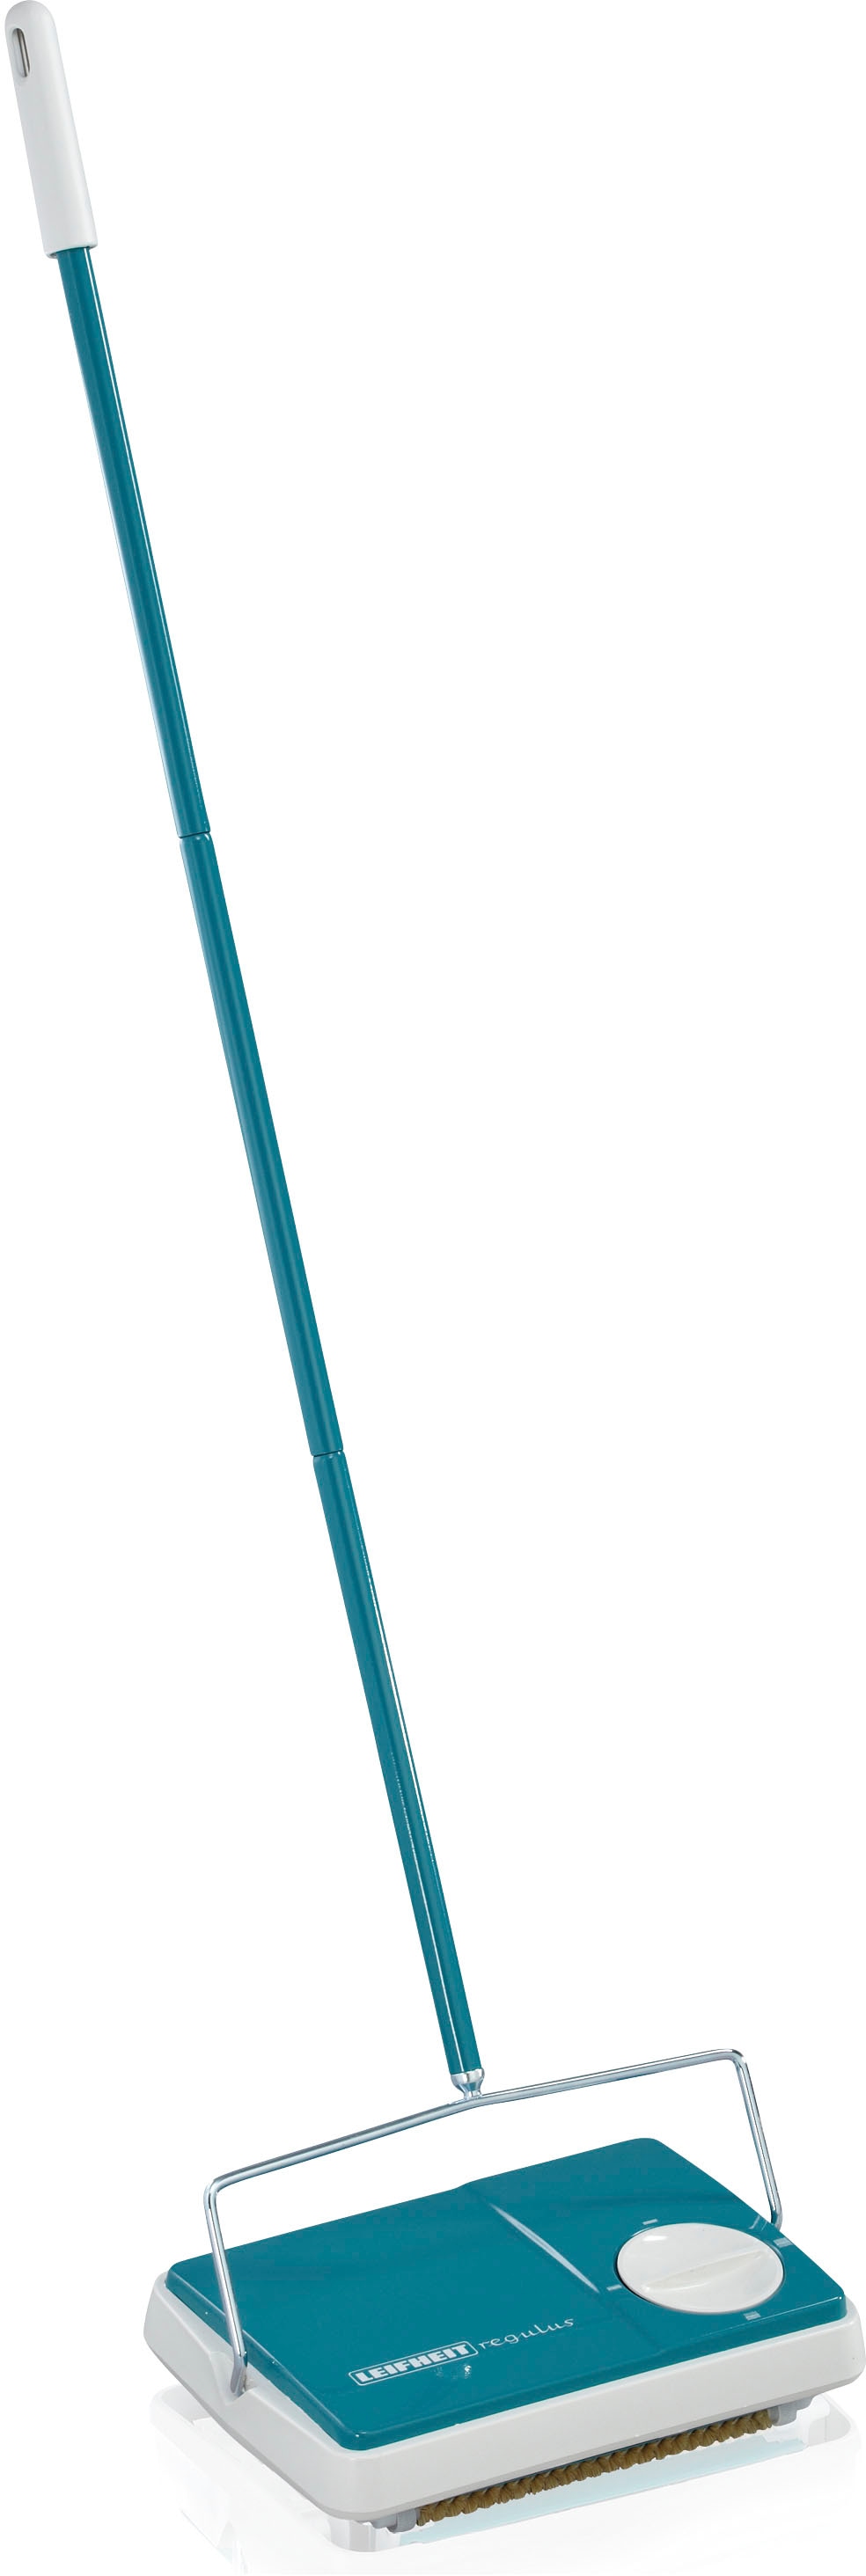 Teppichkehrer »Regulus«, Maße ca.: 28,5 x 110, x 19,5 cm (BxHxT), türkis